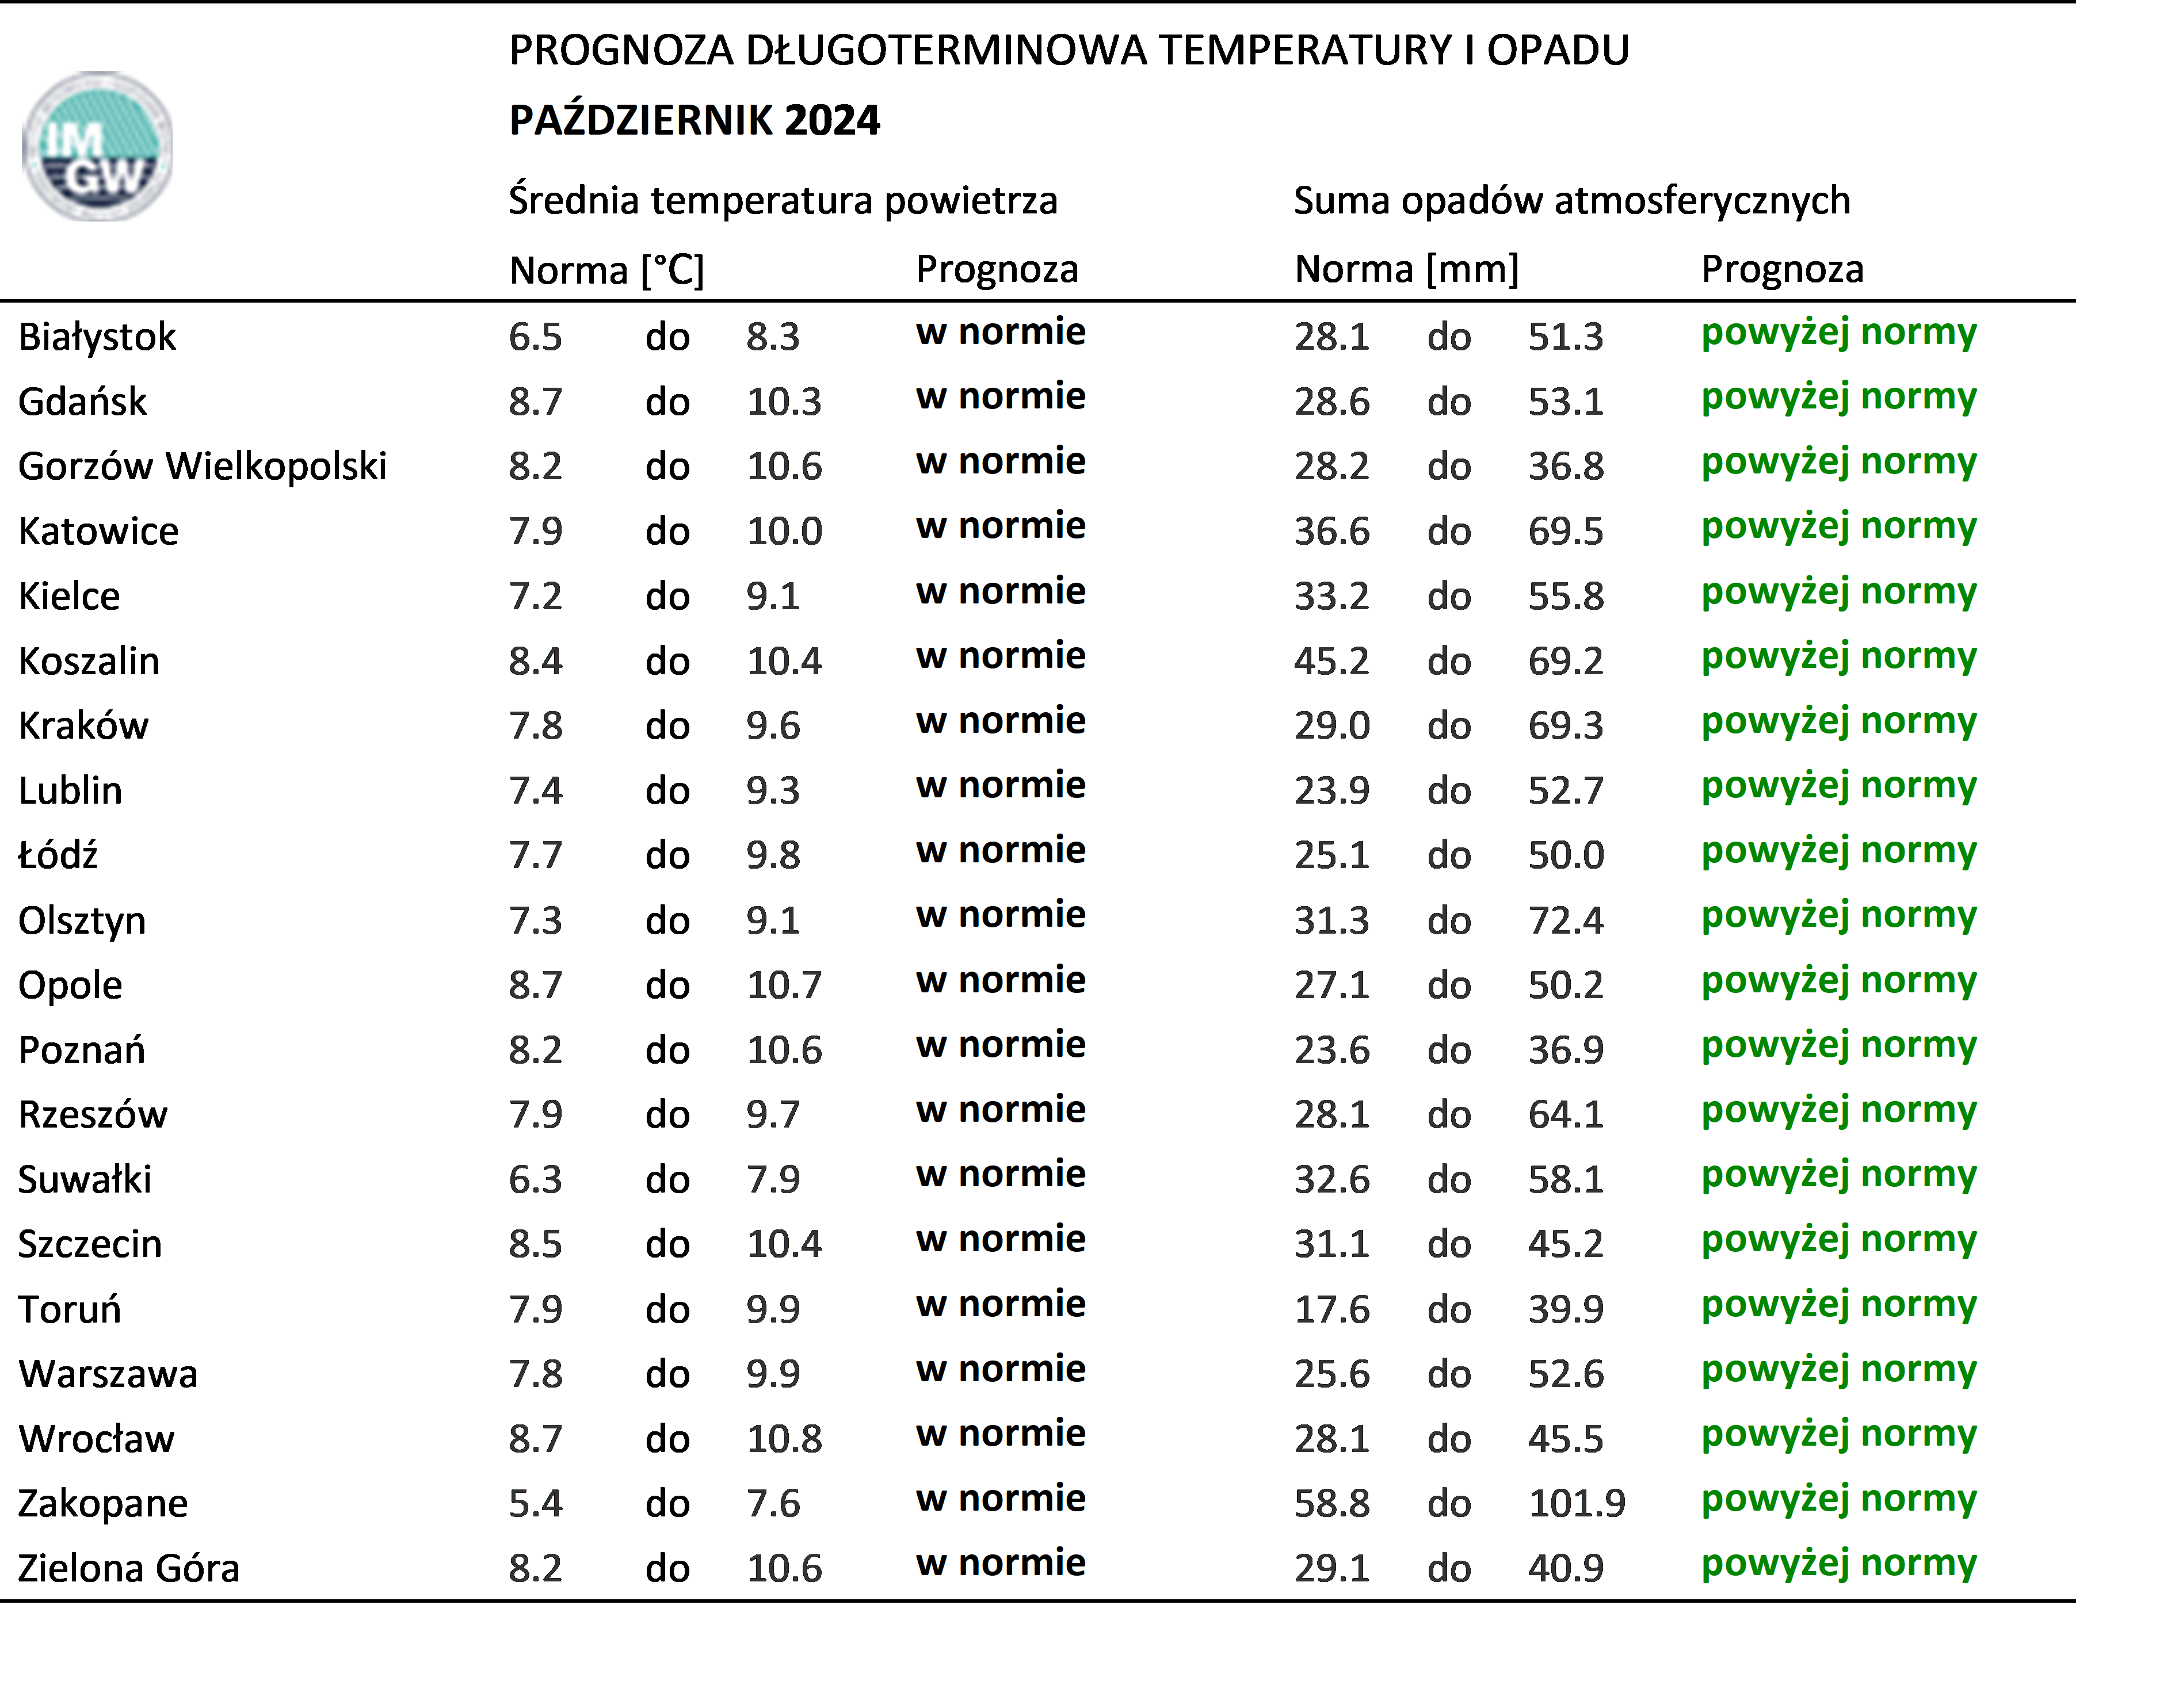 Tab. 4. Norma średniej temperatury powietrza i sumy opadów atmosferycznych dla października z lat 1991-2020 dla wybranych miast w Polsce wraz z prognozą na październik 2024 r.